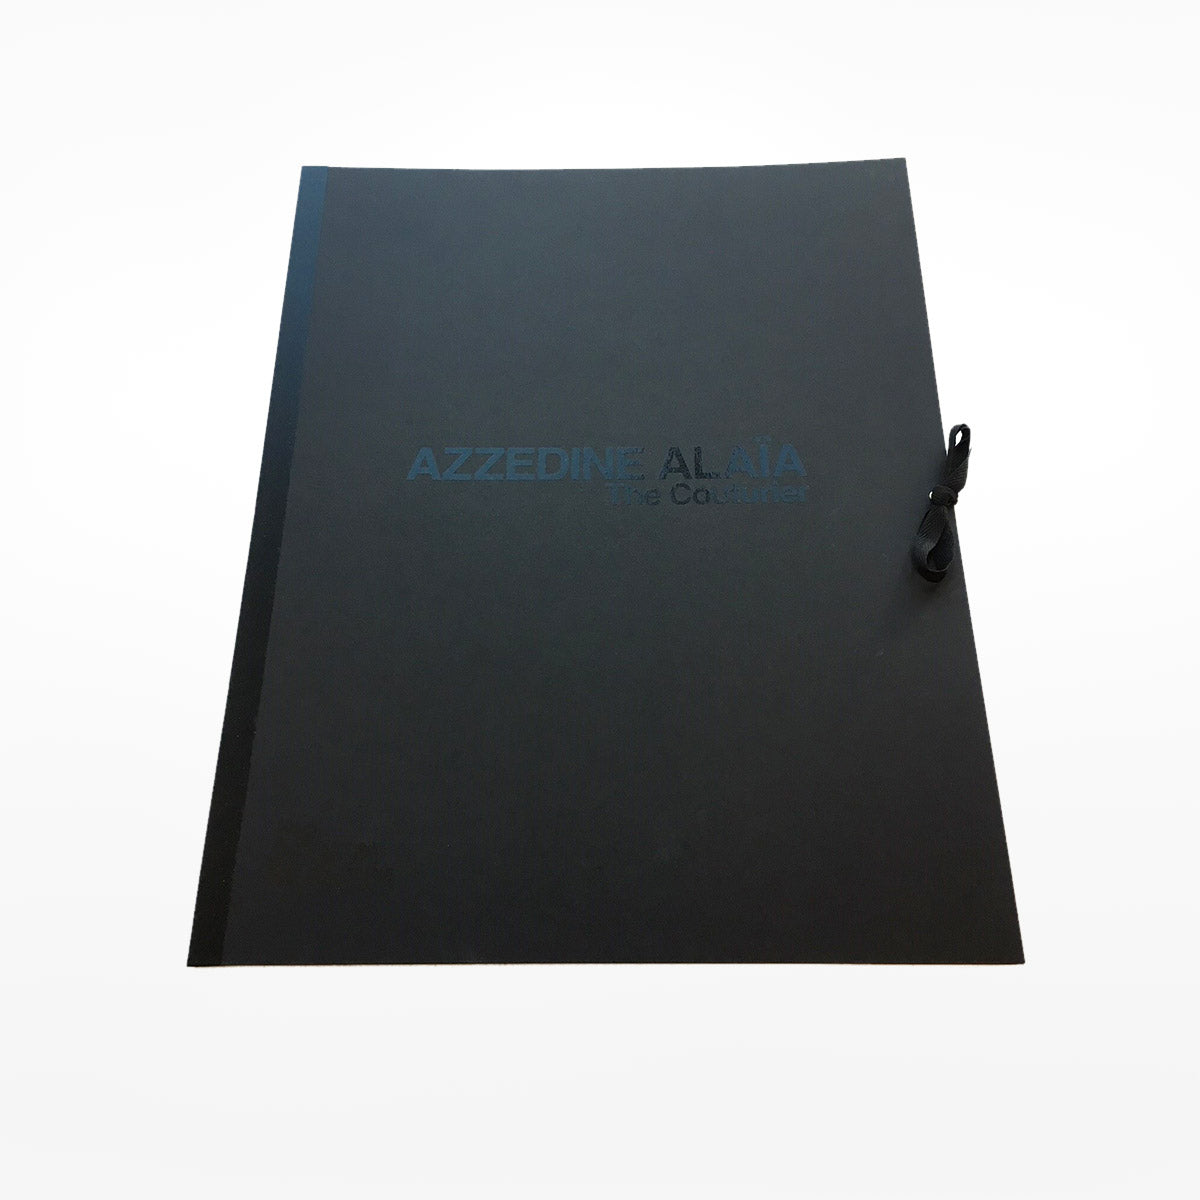 Azzedine Alaïa limited edition portfolio - Alaïa bag